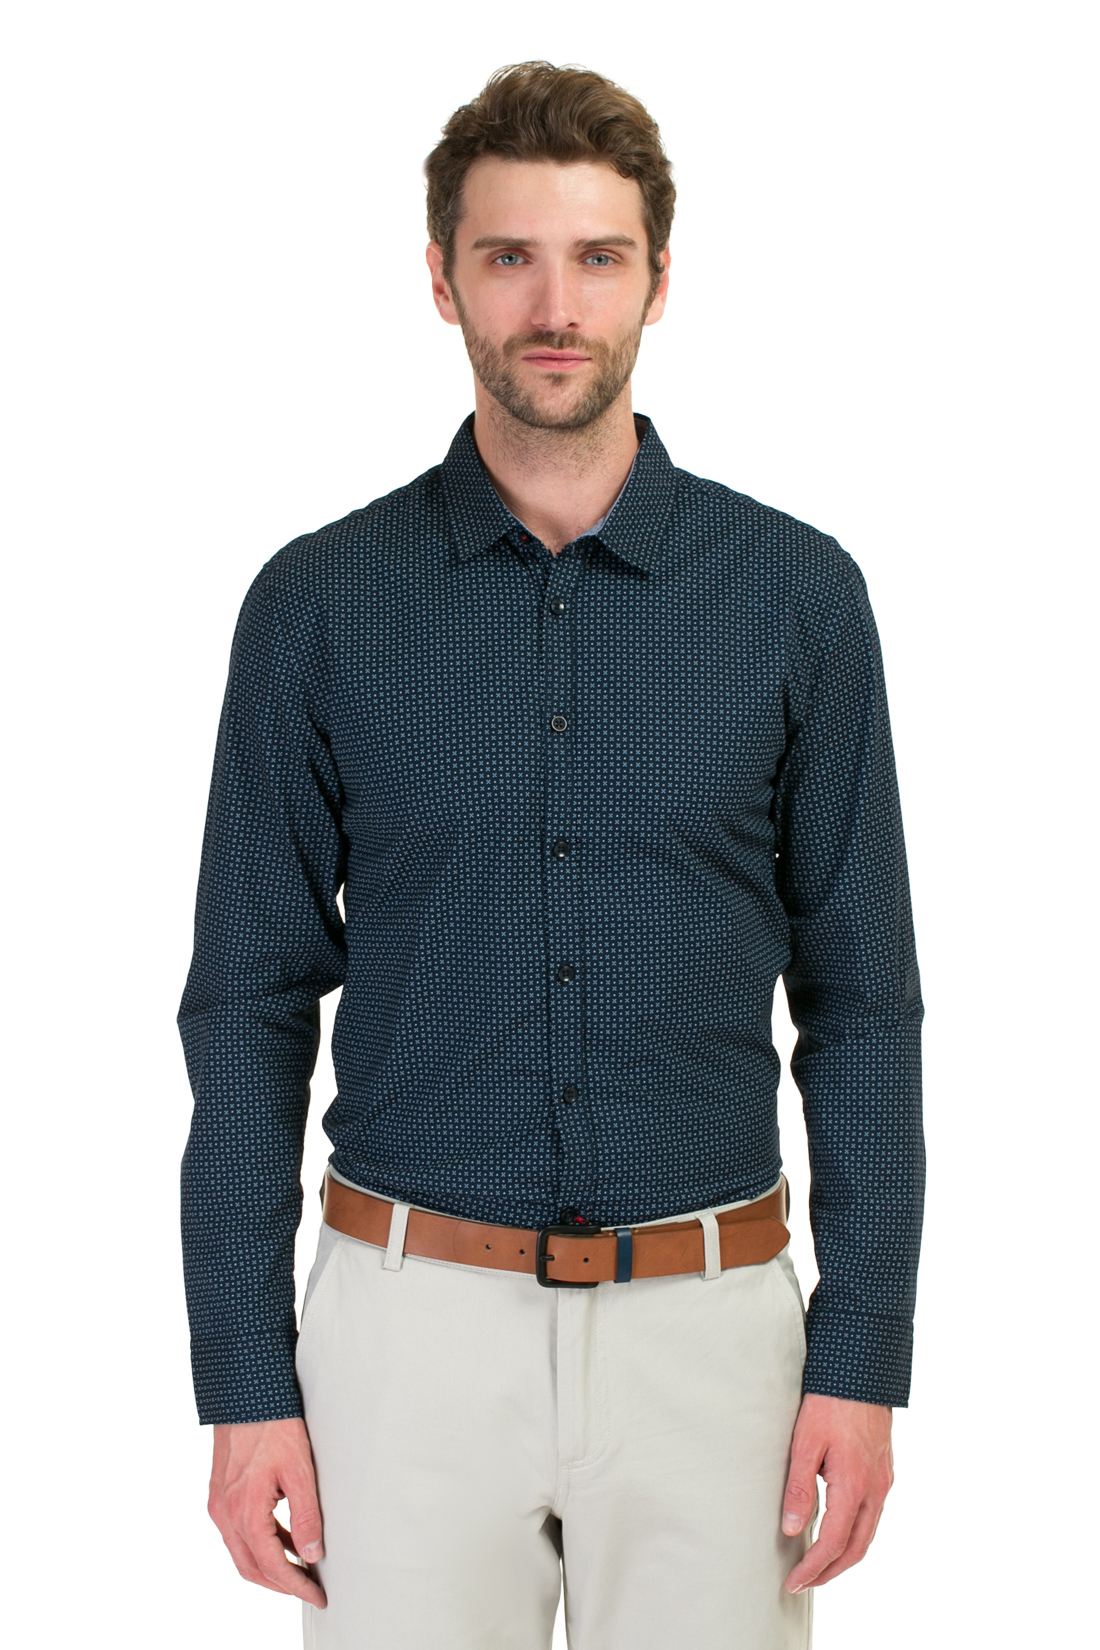 Рубашка с мелким орнаментом (арт. baon B667006), размер L, цвет синий